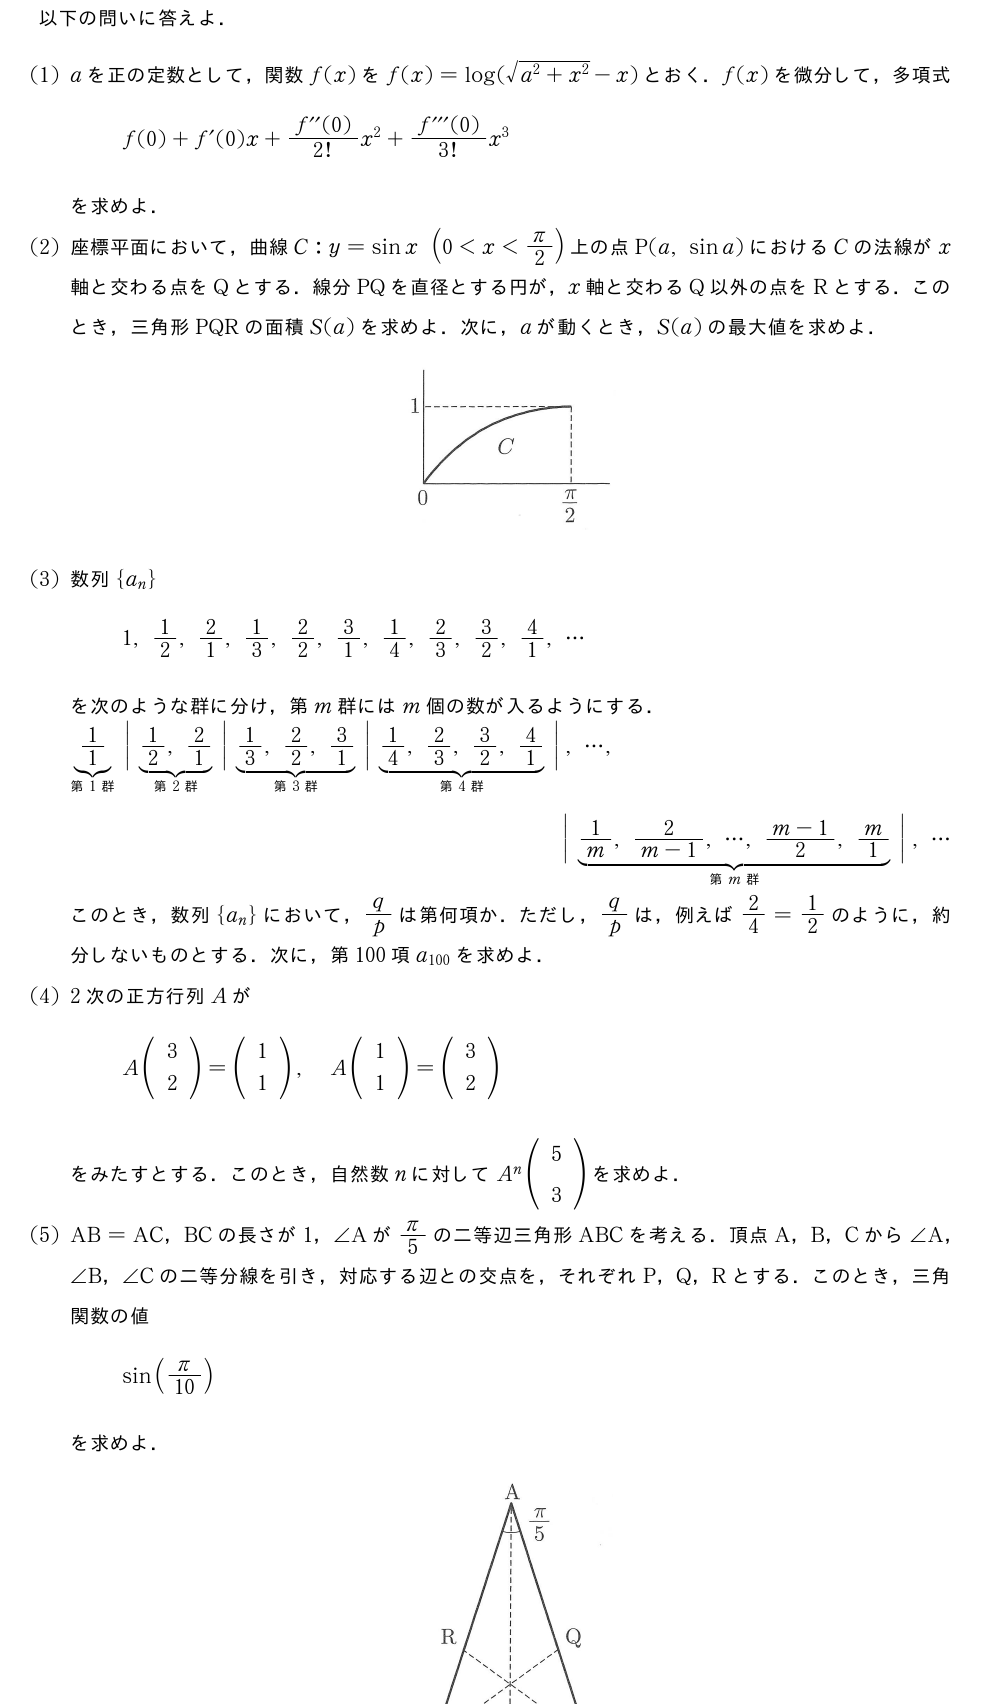 以下の問いに答えよ．(1)aを正の定数として，関数f(x)をf(x)=log(\sqrt{a^2+x^2}-x)とおく．f(x)を微分して，多項式f(0)+f´(0)x+\frac{f^{\prime\prime}(0)}{2!}x^2+\frac{f^{\prime\prime\prime}(0)}{3!}x^3を求めよ．(2)座標平面において，曲線C:y=sinx(0＜x＜π/2)上の点P(a,sina)におけるCの法線がx軸と交わる点をQとする．線分PQを直径とする円が，x軸と交わるQ以外の点をRとする．このとき，三角形PQRの面積S(a)を求めよ．次に，aが動くとき，S(a)の最大値を求めよ．（プレビューでは図は省略します）(3)数列{a_n}1,1/2,2/1,1/3,2/2,3/1,1/4,2/3,3/2,4/1,・・・を次のような群に分け，第m群にはm個の数が入るようにする．\sitabrace{1/1}_{第1群}\bigg|\sitabrace{1/2,2/1}_{第2群}\bigg|\sitabrace{1/3,2/2,3/1}_{第3群}\bigg|\sitabrace{1/4,2/3,3/2,4/1}_{第4群}\bigg|,・・・,\bigg|\sitabrace{1/m,\frac{2}{m-1},・・・,\frac{m-1}{2},m/1}_{第m群}\bigg|,・・・このとき，数列{a_n}において，q/pは第何項か．ただし，q/pは，例えば2/4=1/2のように，約分しないものとする．次に，第100項a_{100}を求めよ．(4)2次の正方行列AがA(\begin{array}{c}3\2\end{array})=(\begin{array}{c}1\1\end{array}),A(\begin{array}{c}1\1\end{array})=(\begin{array}{c}3\2\end{array})をみたすとする．このとき，自然数nに対してA^n(\begin{array}{c}5\3\end{array})を求めよ．(5)AB=AC，BCの長さが1，∠Aがπ/5の二等辺三角形ABCを考える．頂点A，B，Cから∠A，∠B，∠Cの二等分線を引き，対応する辺との交点を，それぞれP，Q，Rとする．このとき，三角関数の値sin(π/10)を求めよ．（プレビューでは図は省略します）